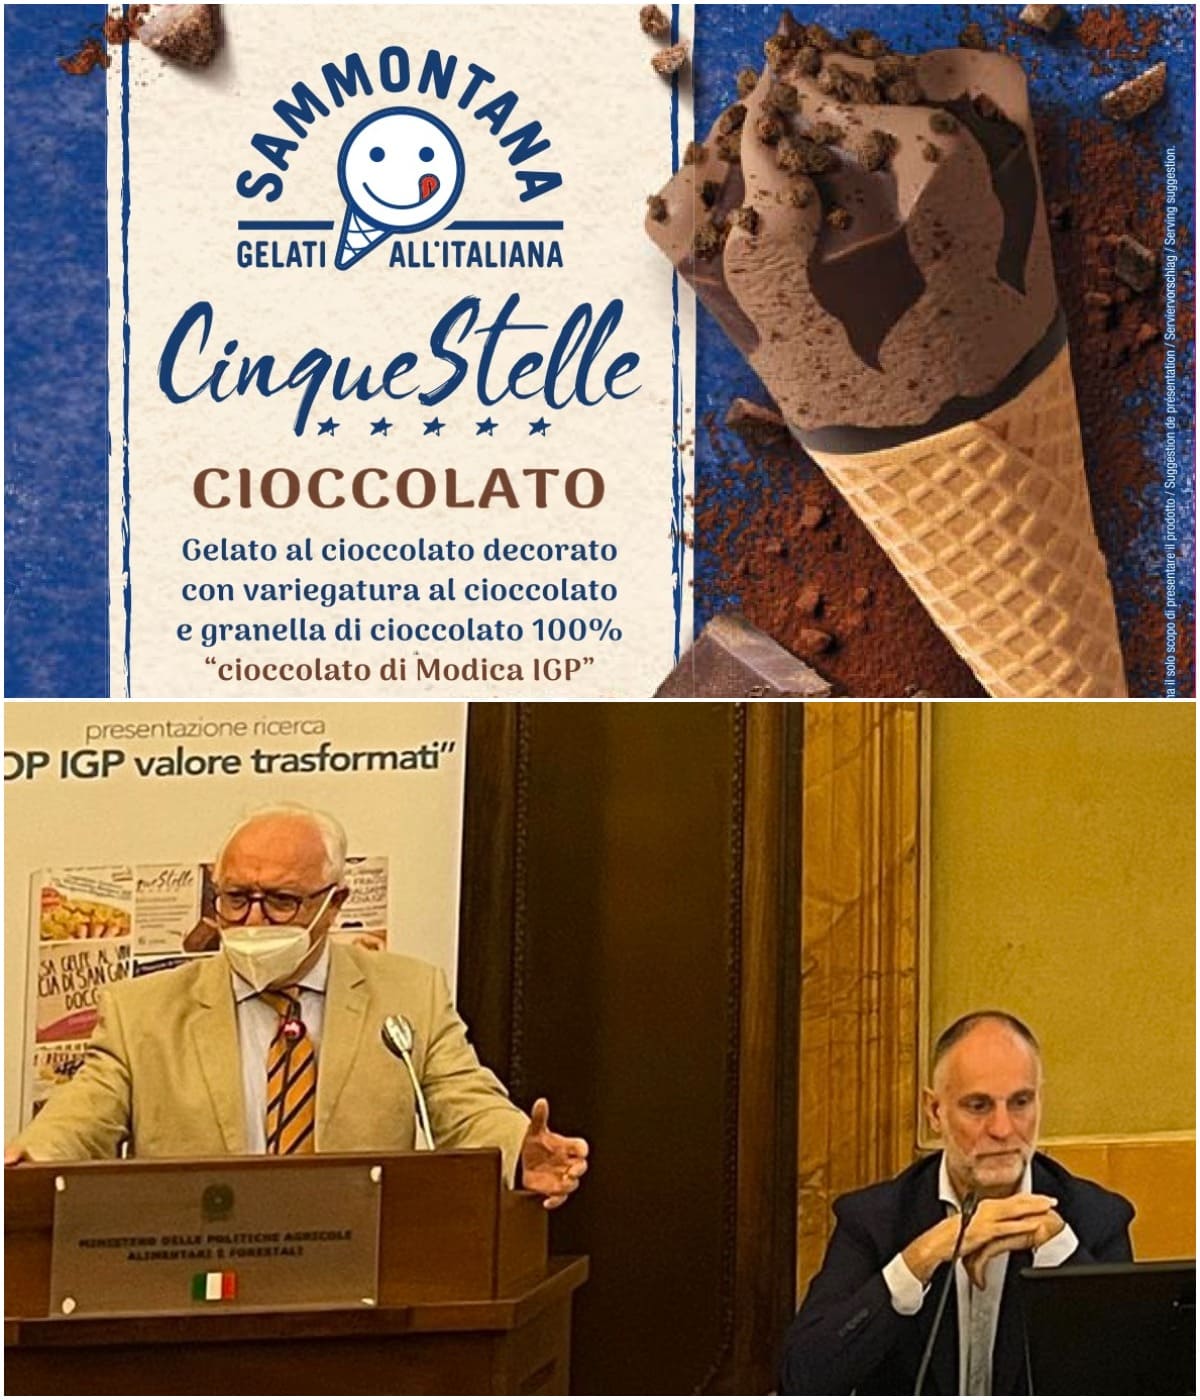 Sammontana lancia il Cornetto Cinque Stelle con Cioccolato di Modica IGP